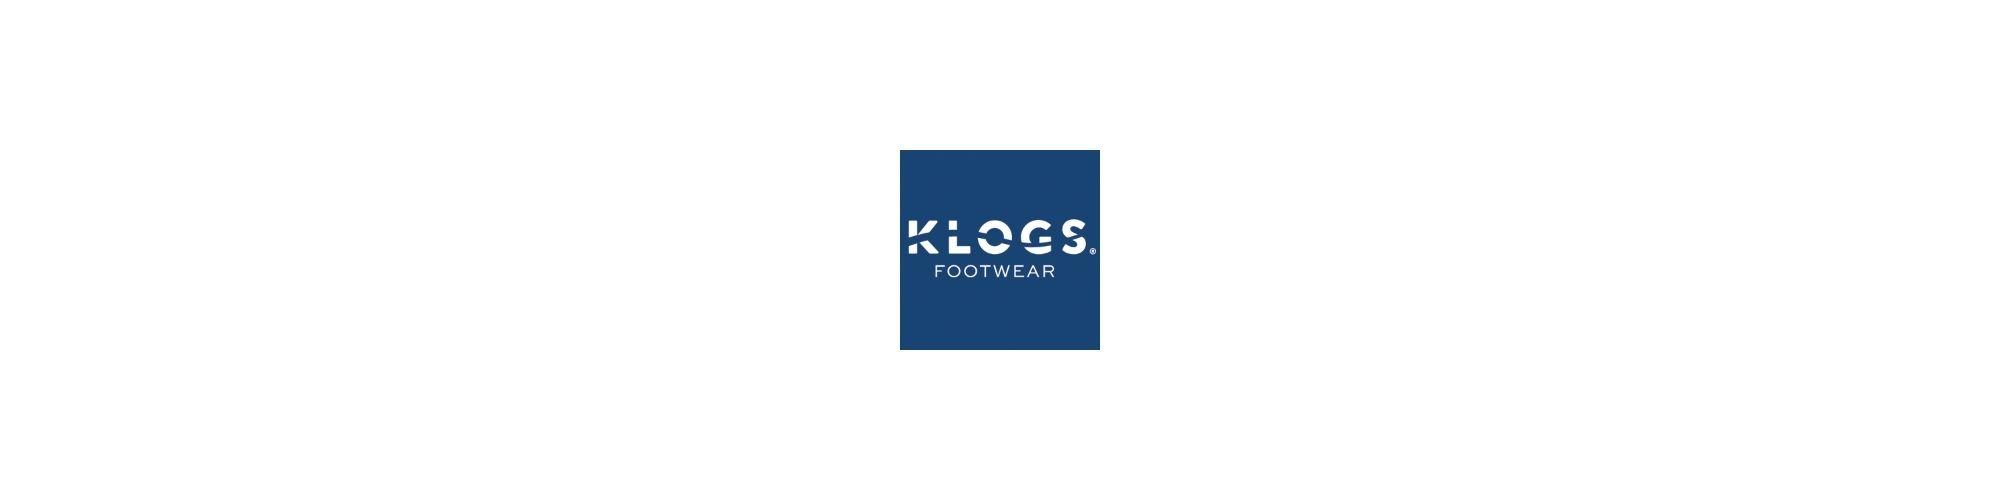 Klogs Logo - Klogs Footwear For Women - Fast Shipping & Low Prices | Flow Feet ...